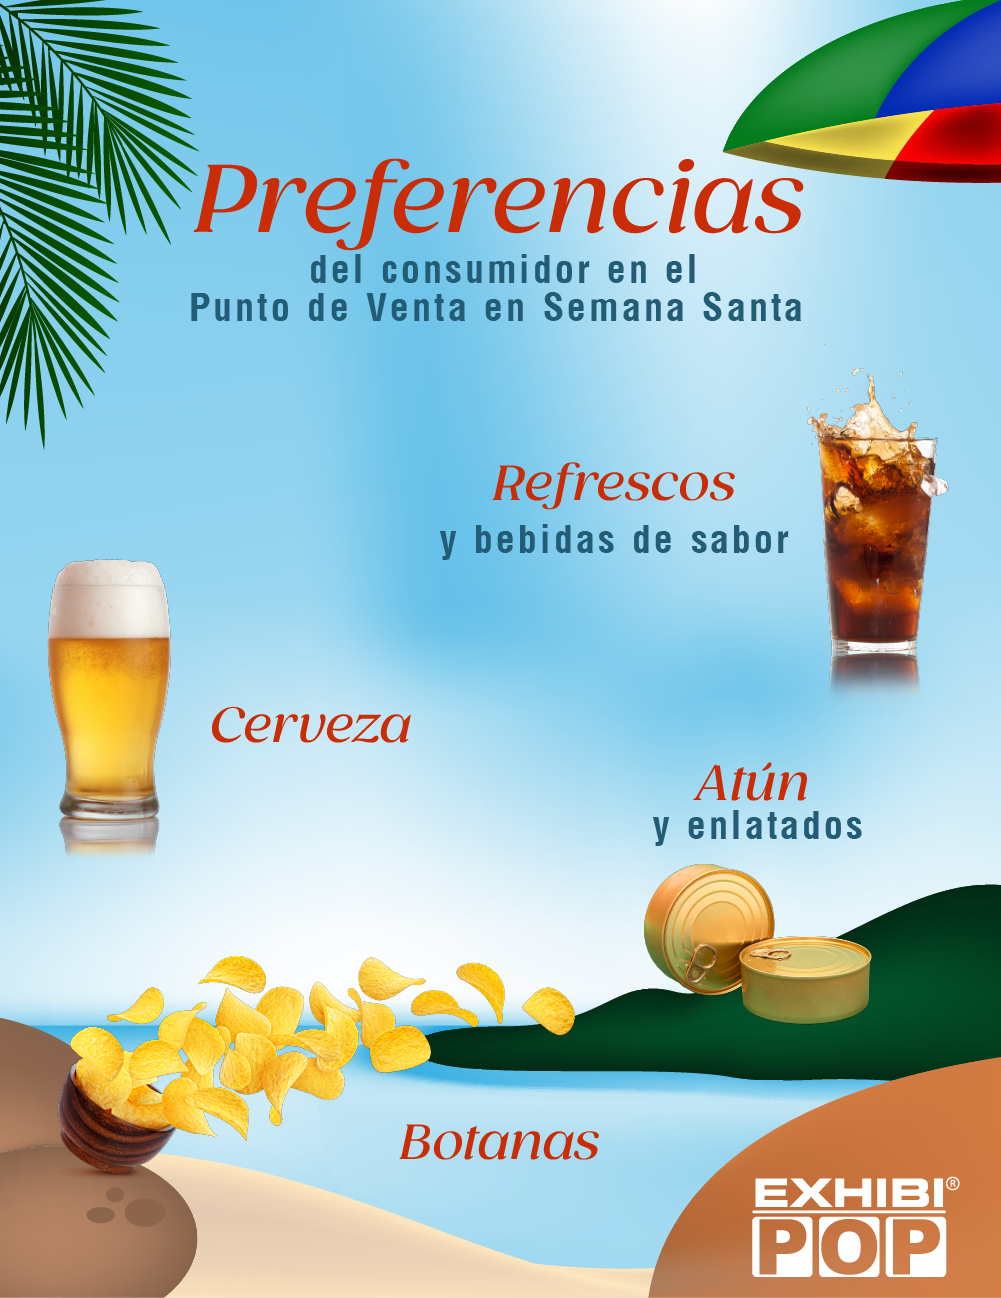 Preferencias del Consumidor en el Punto de Venta durante Semana Santa; cerveza, refrescos, atún, enlatados y botanas